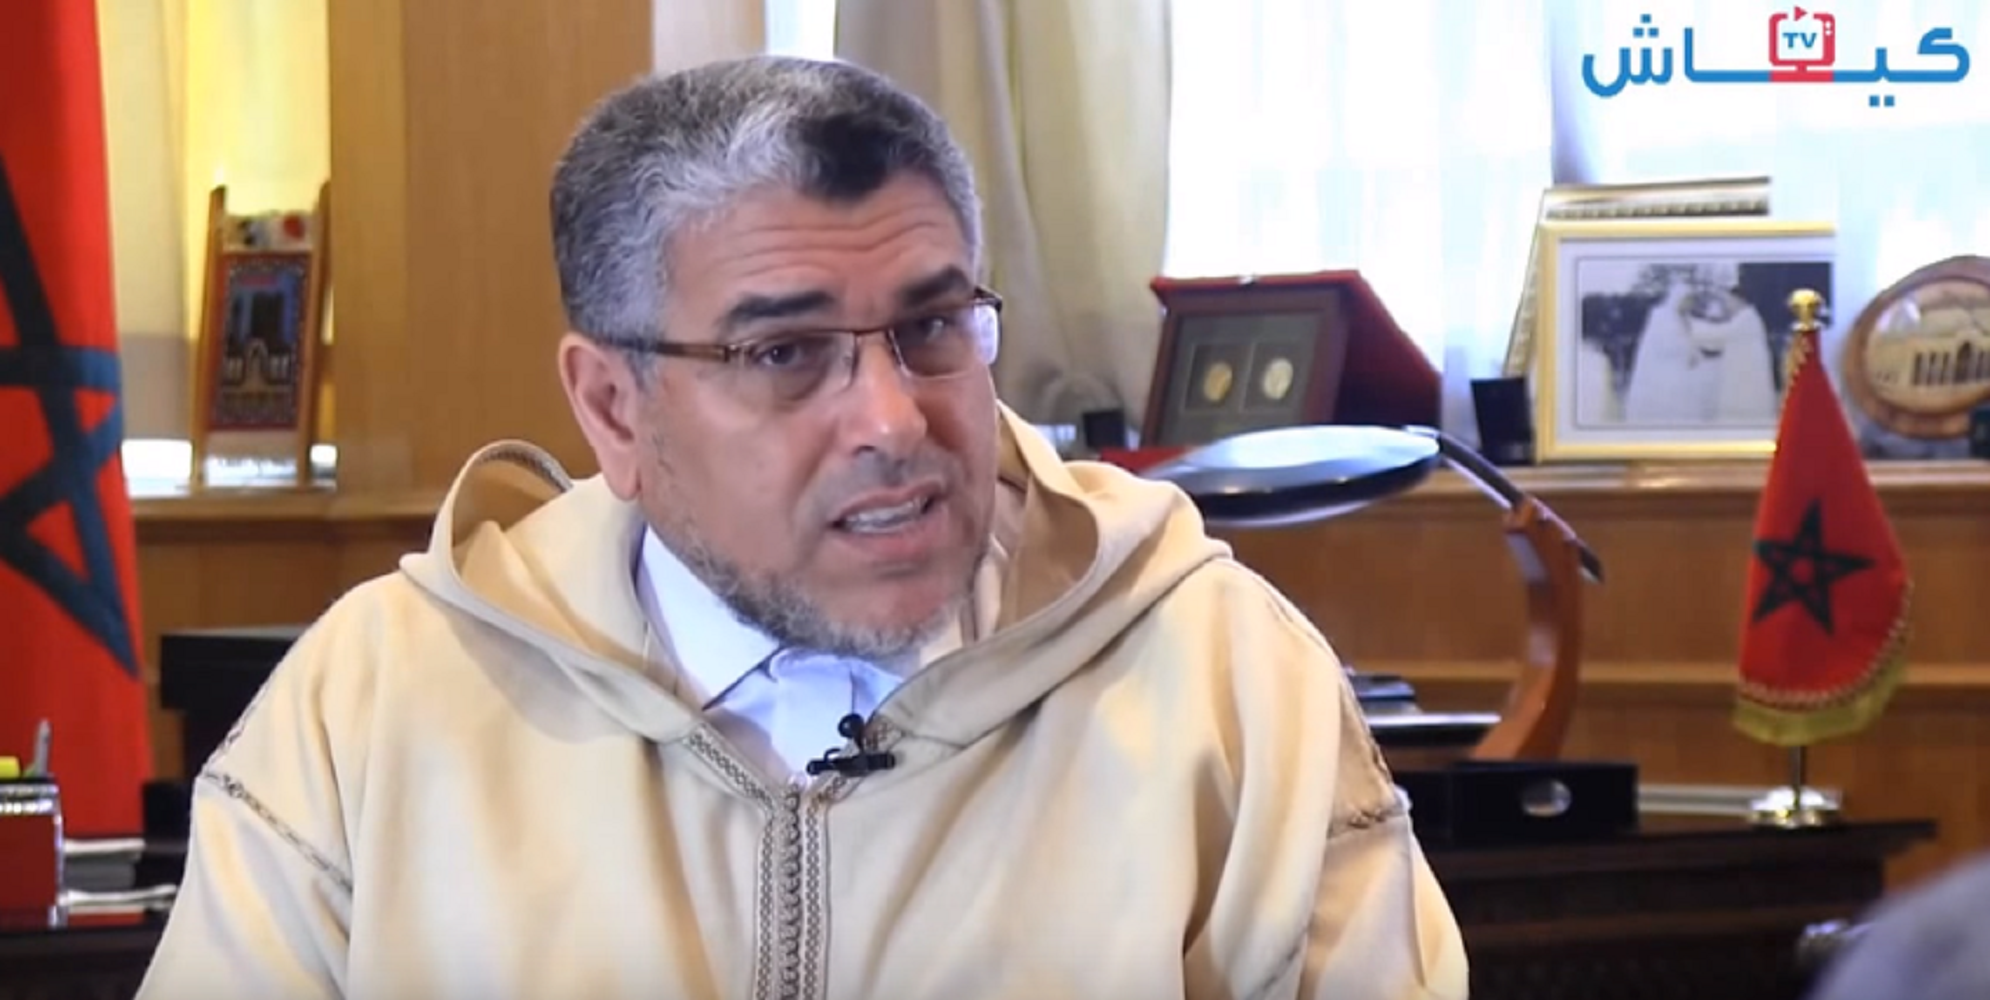 L'homosexualitat és "fastigosa", segons el ministre de Drets Humans marroquí